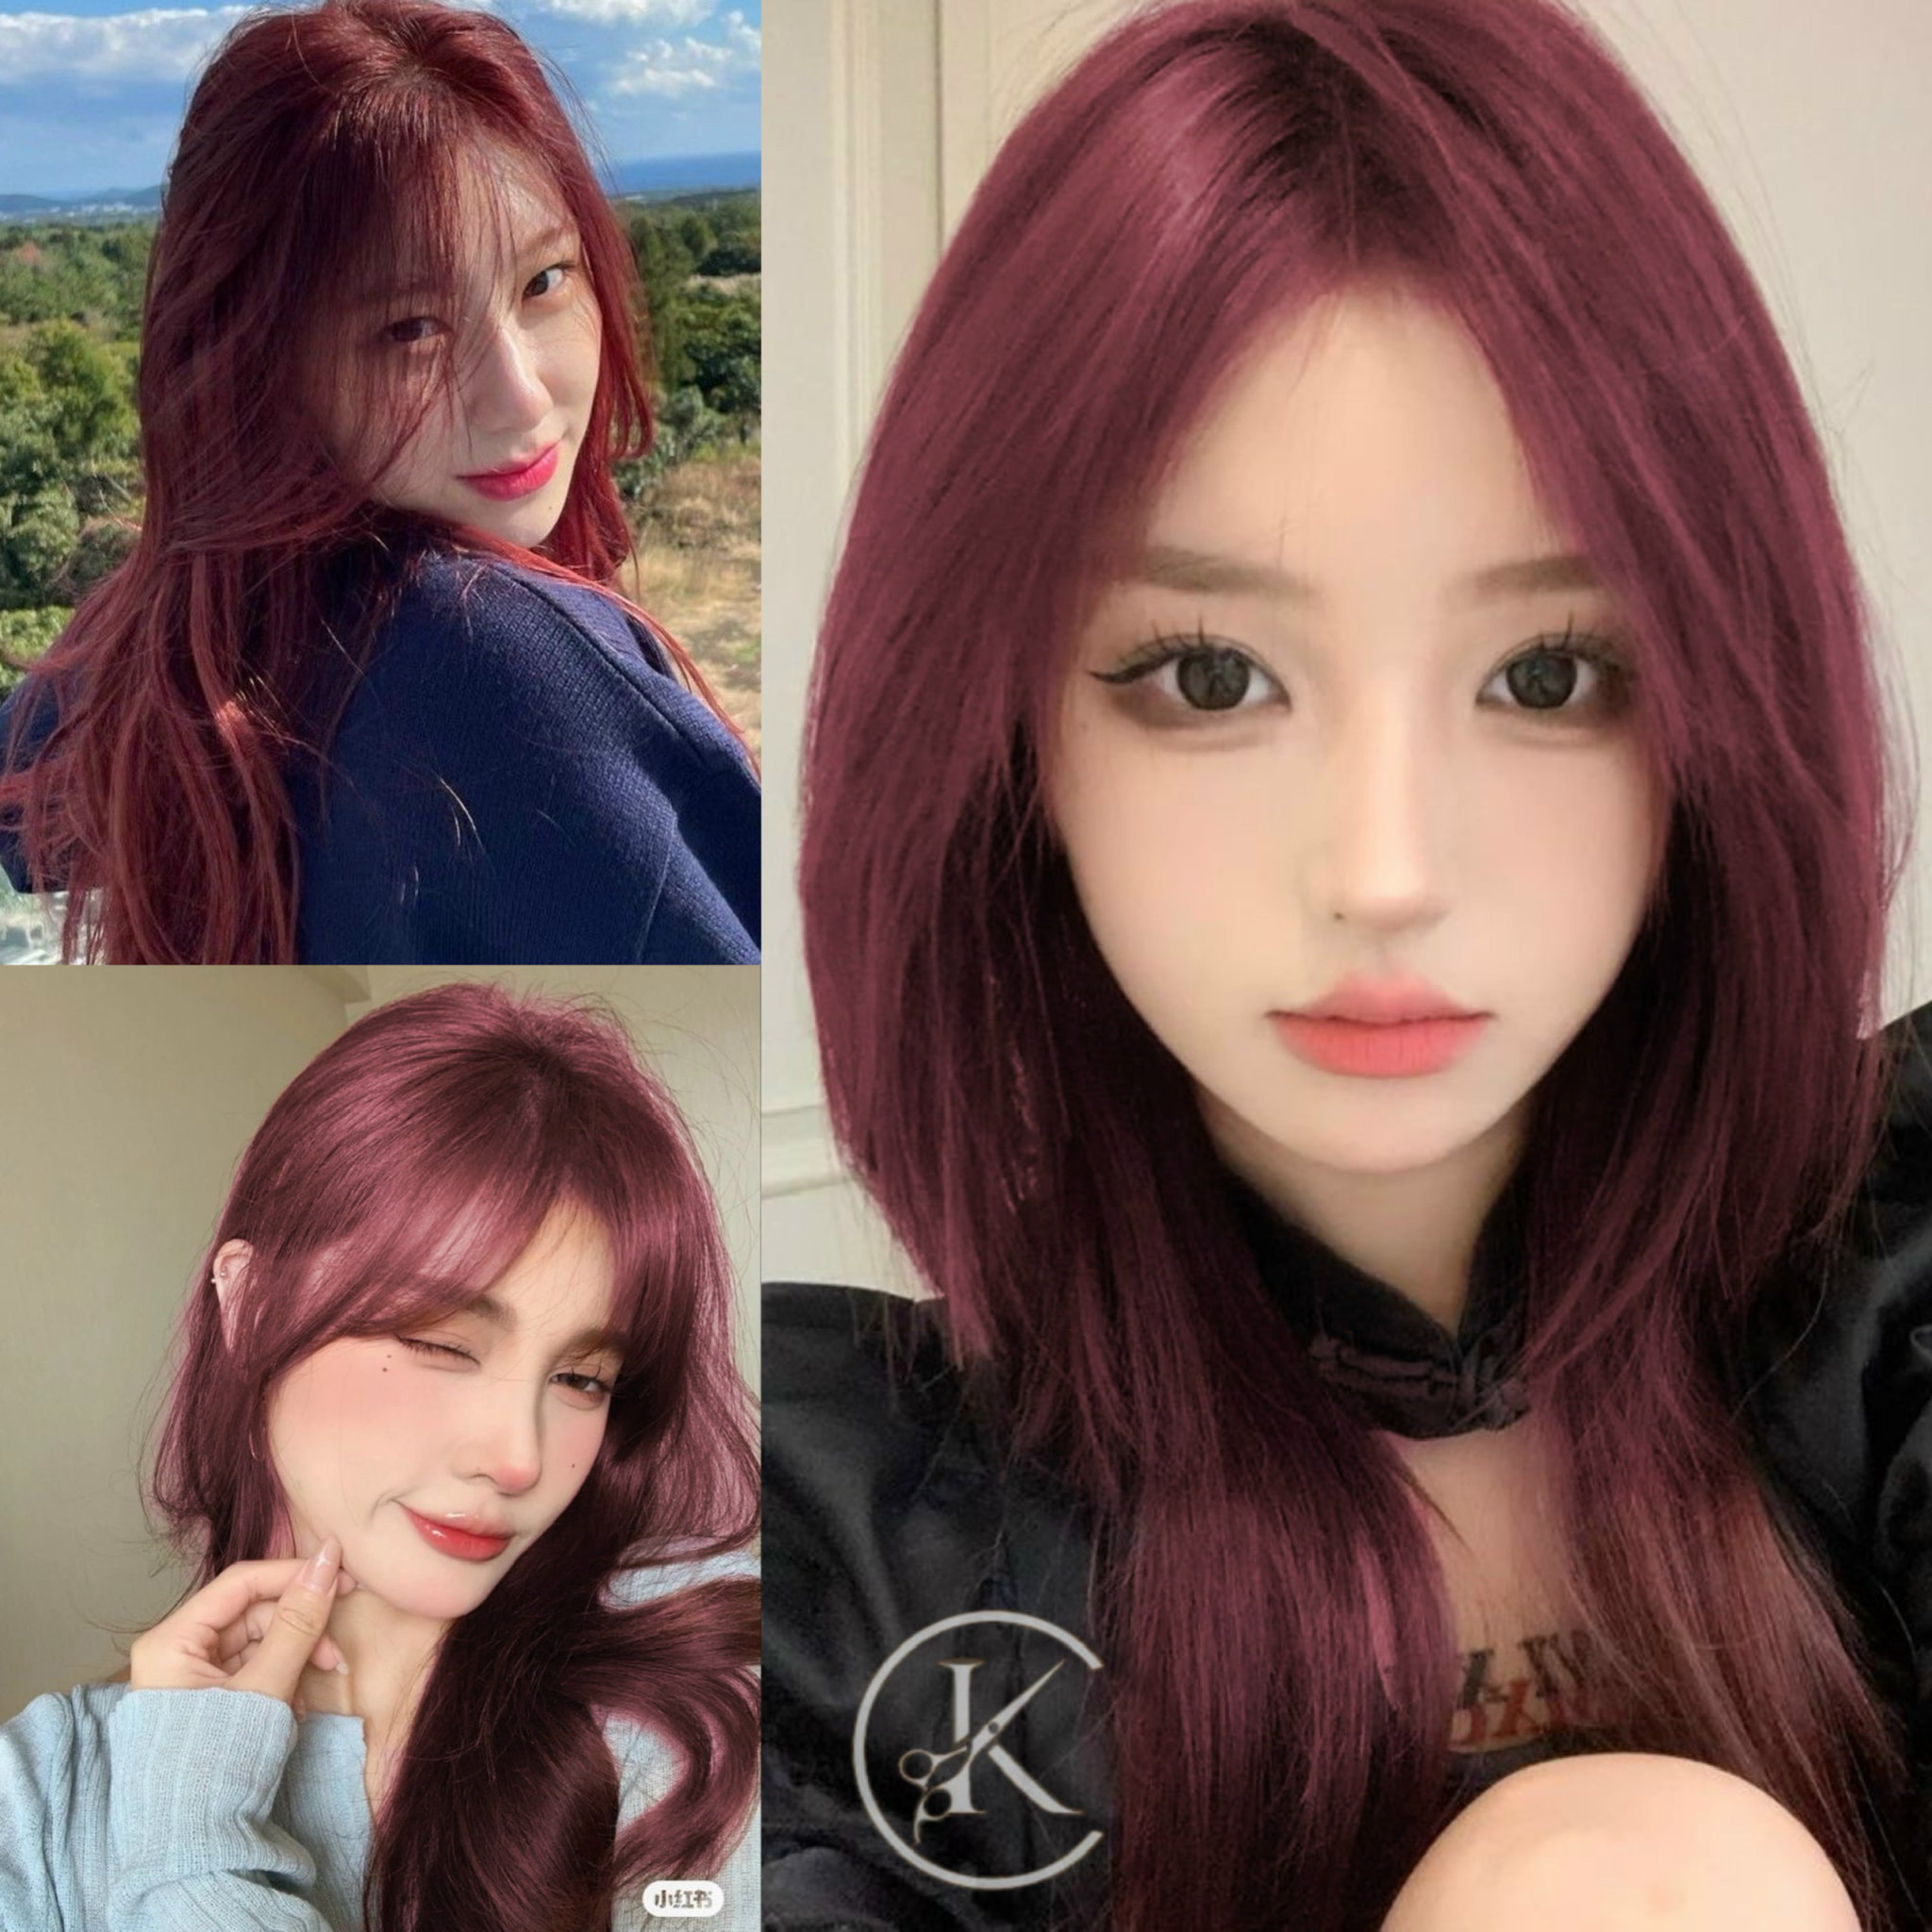 Màu tóc đỏ đen luôn được yêu thích vì sự bí ẩn và quyến rũ mà nó đem lại, hãy khám phá nét đẹp khác biệt với vẻ ngoài đầy sức hút của màu tóc này.